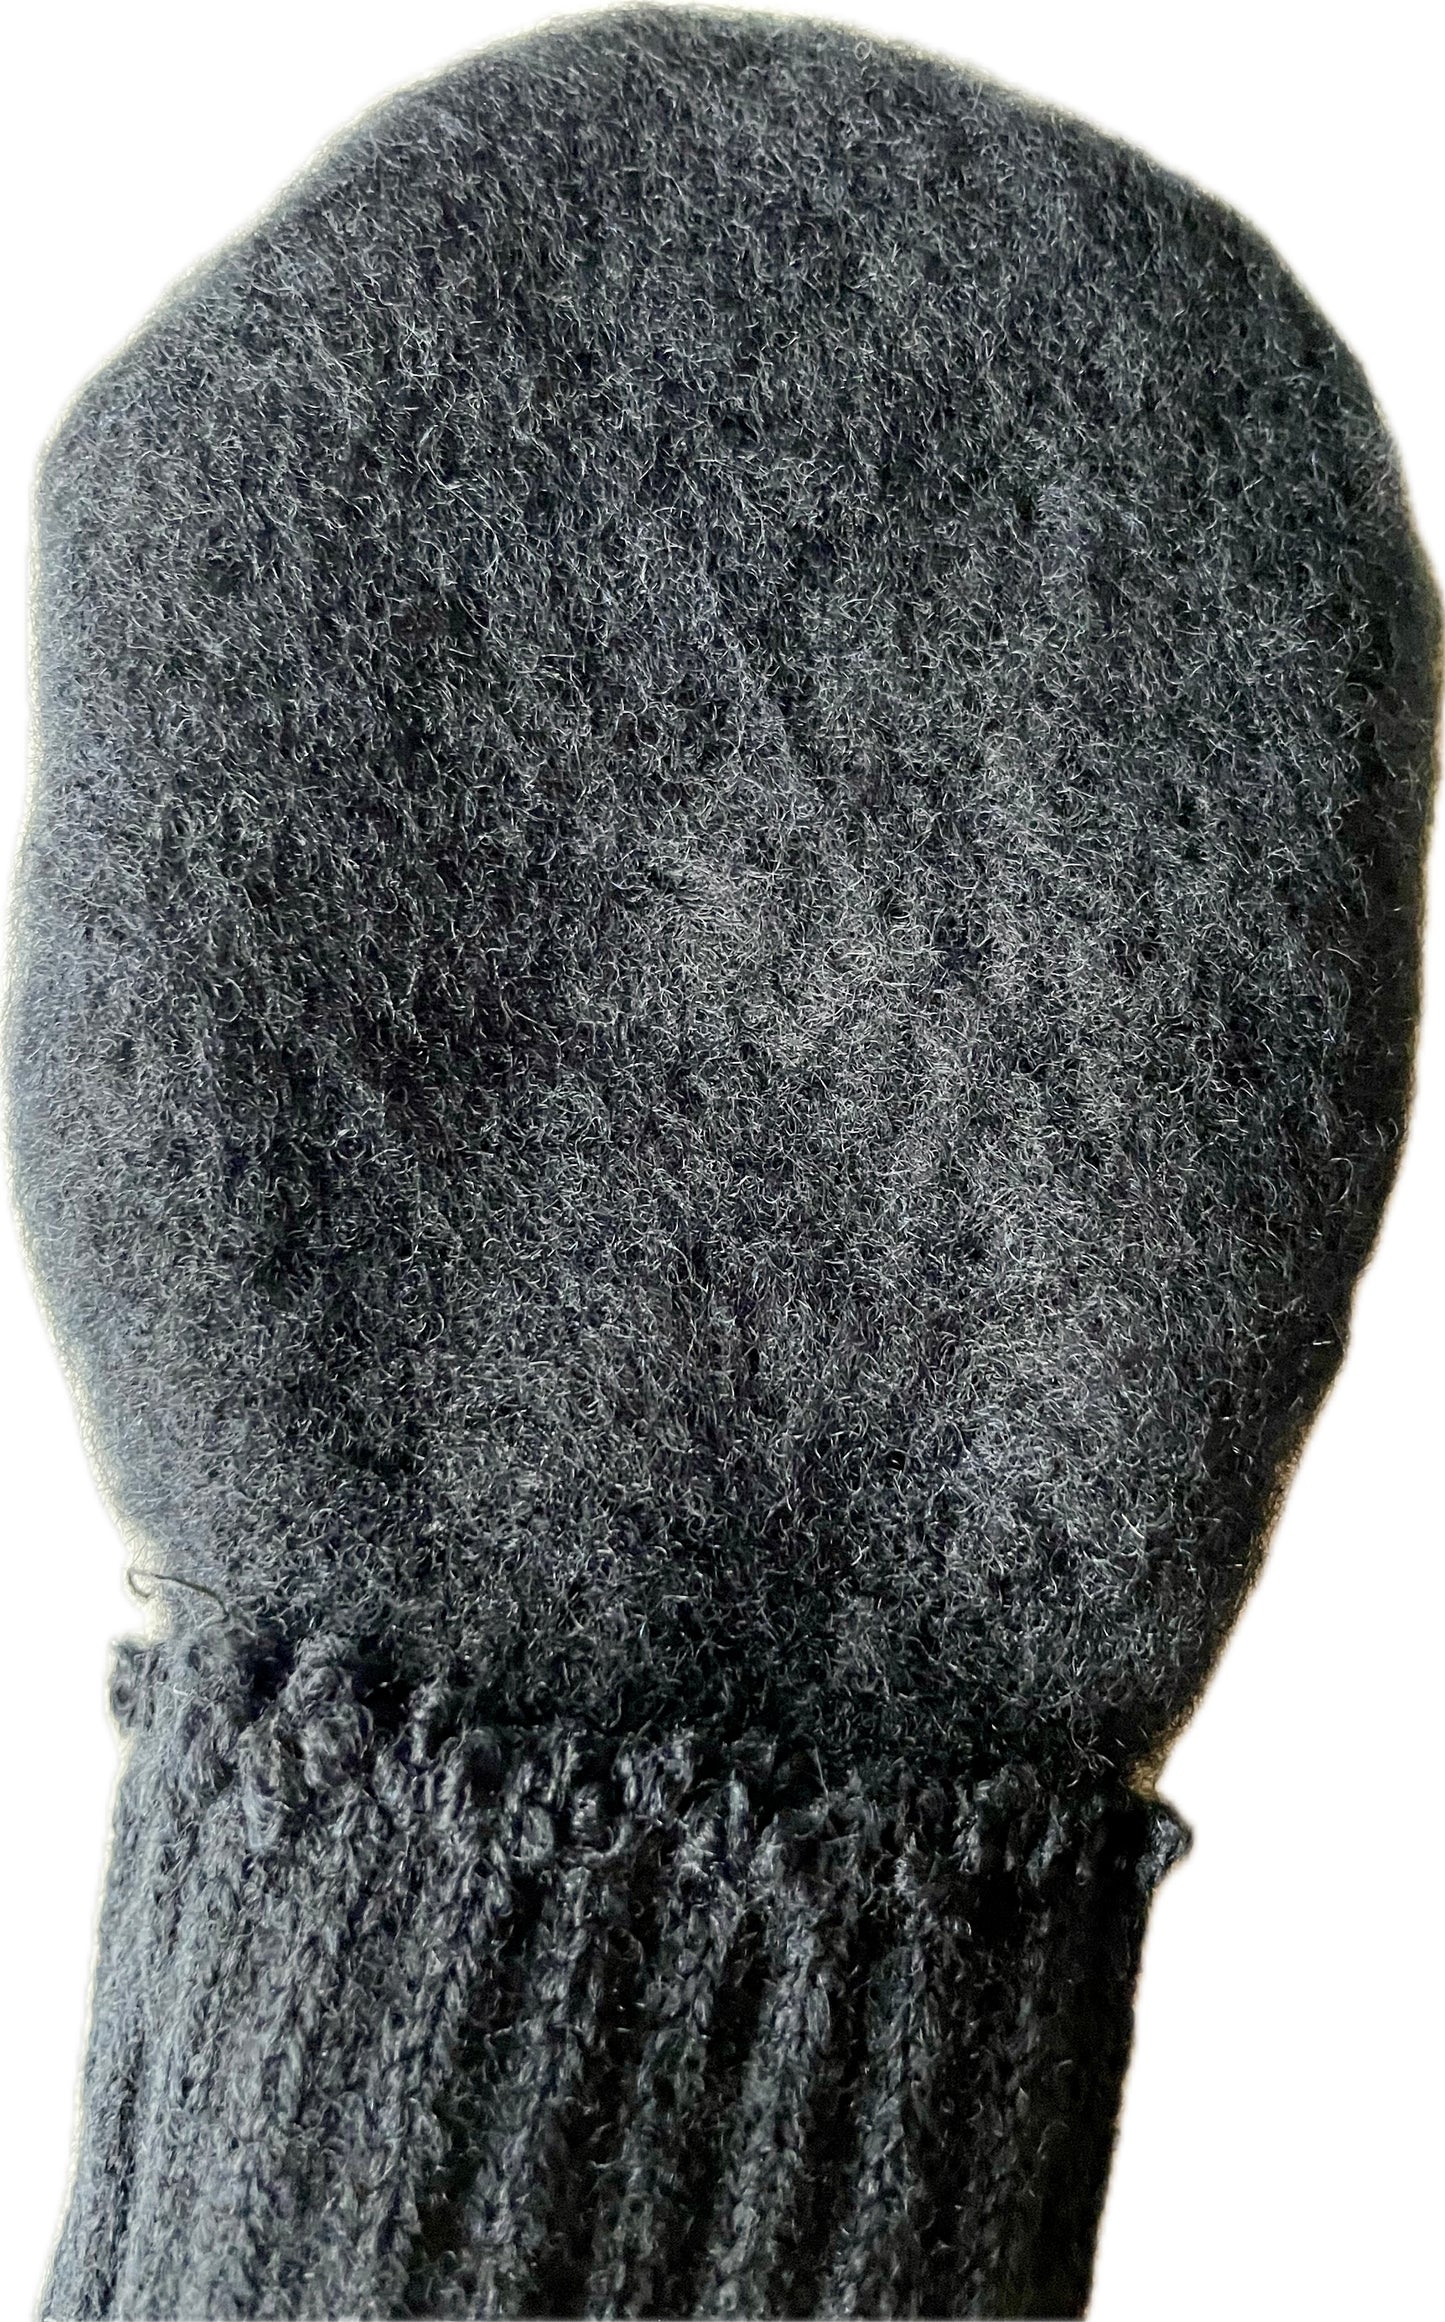 Rumlii Børnevanter SORT One-Size 1-4 år 70% uld